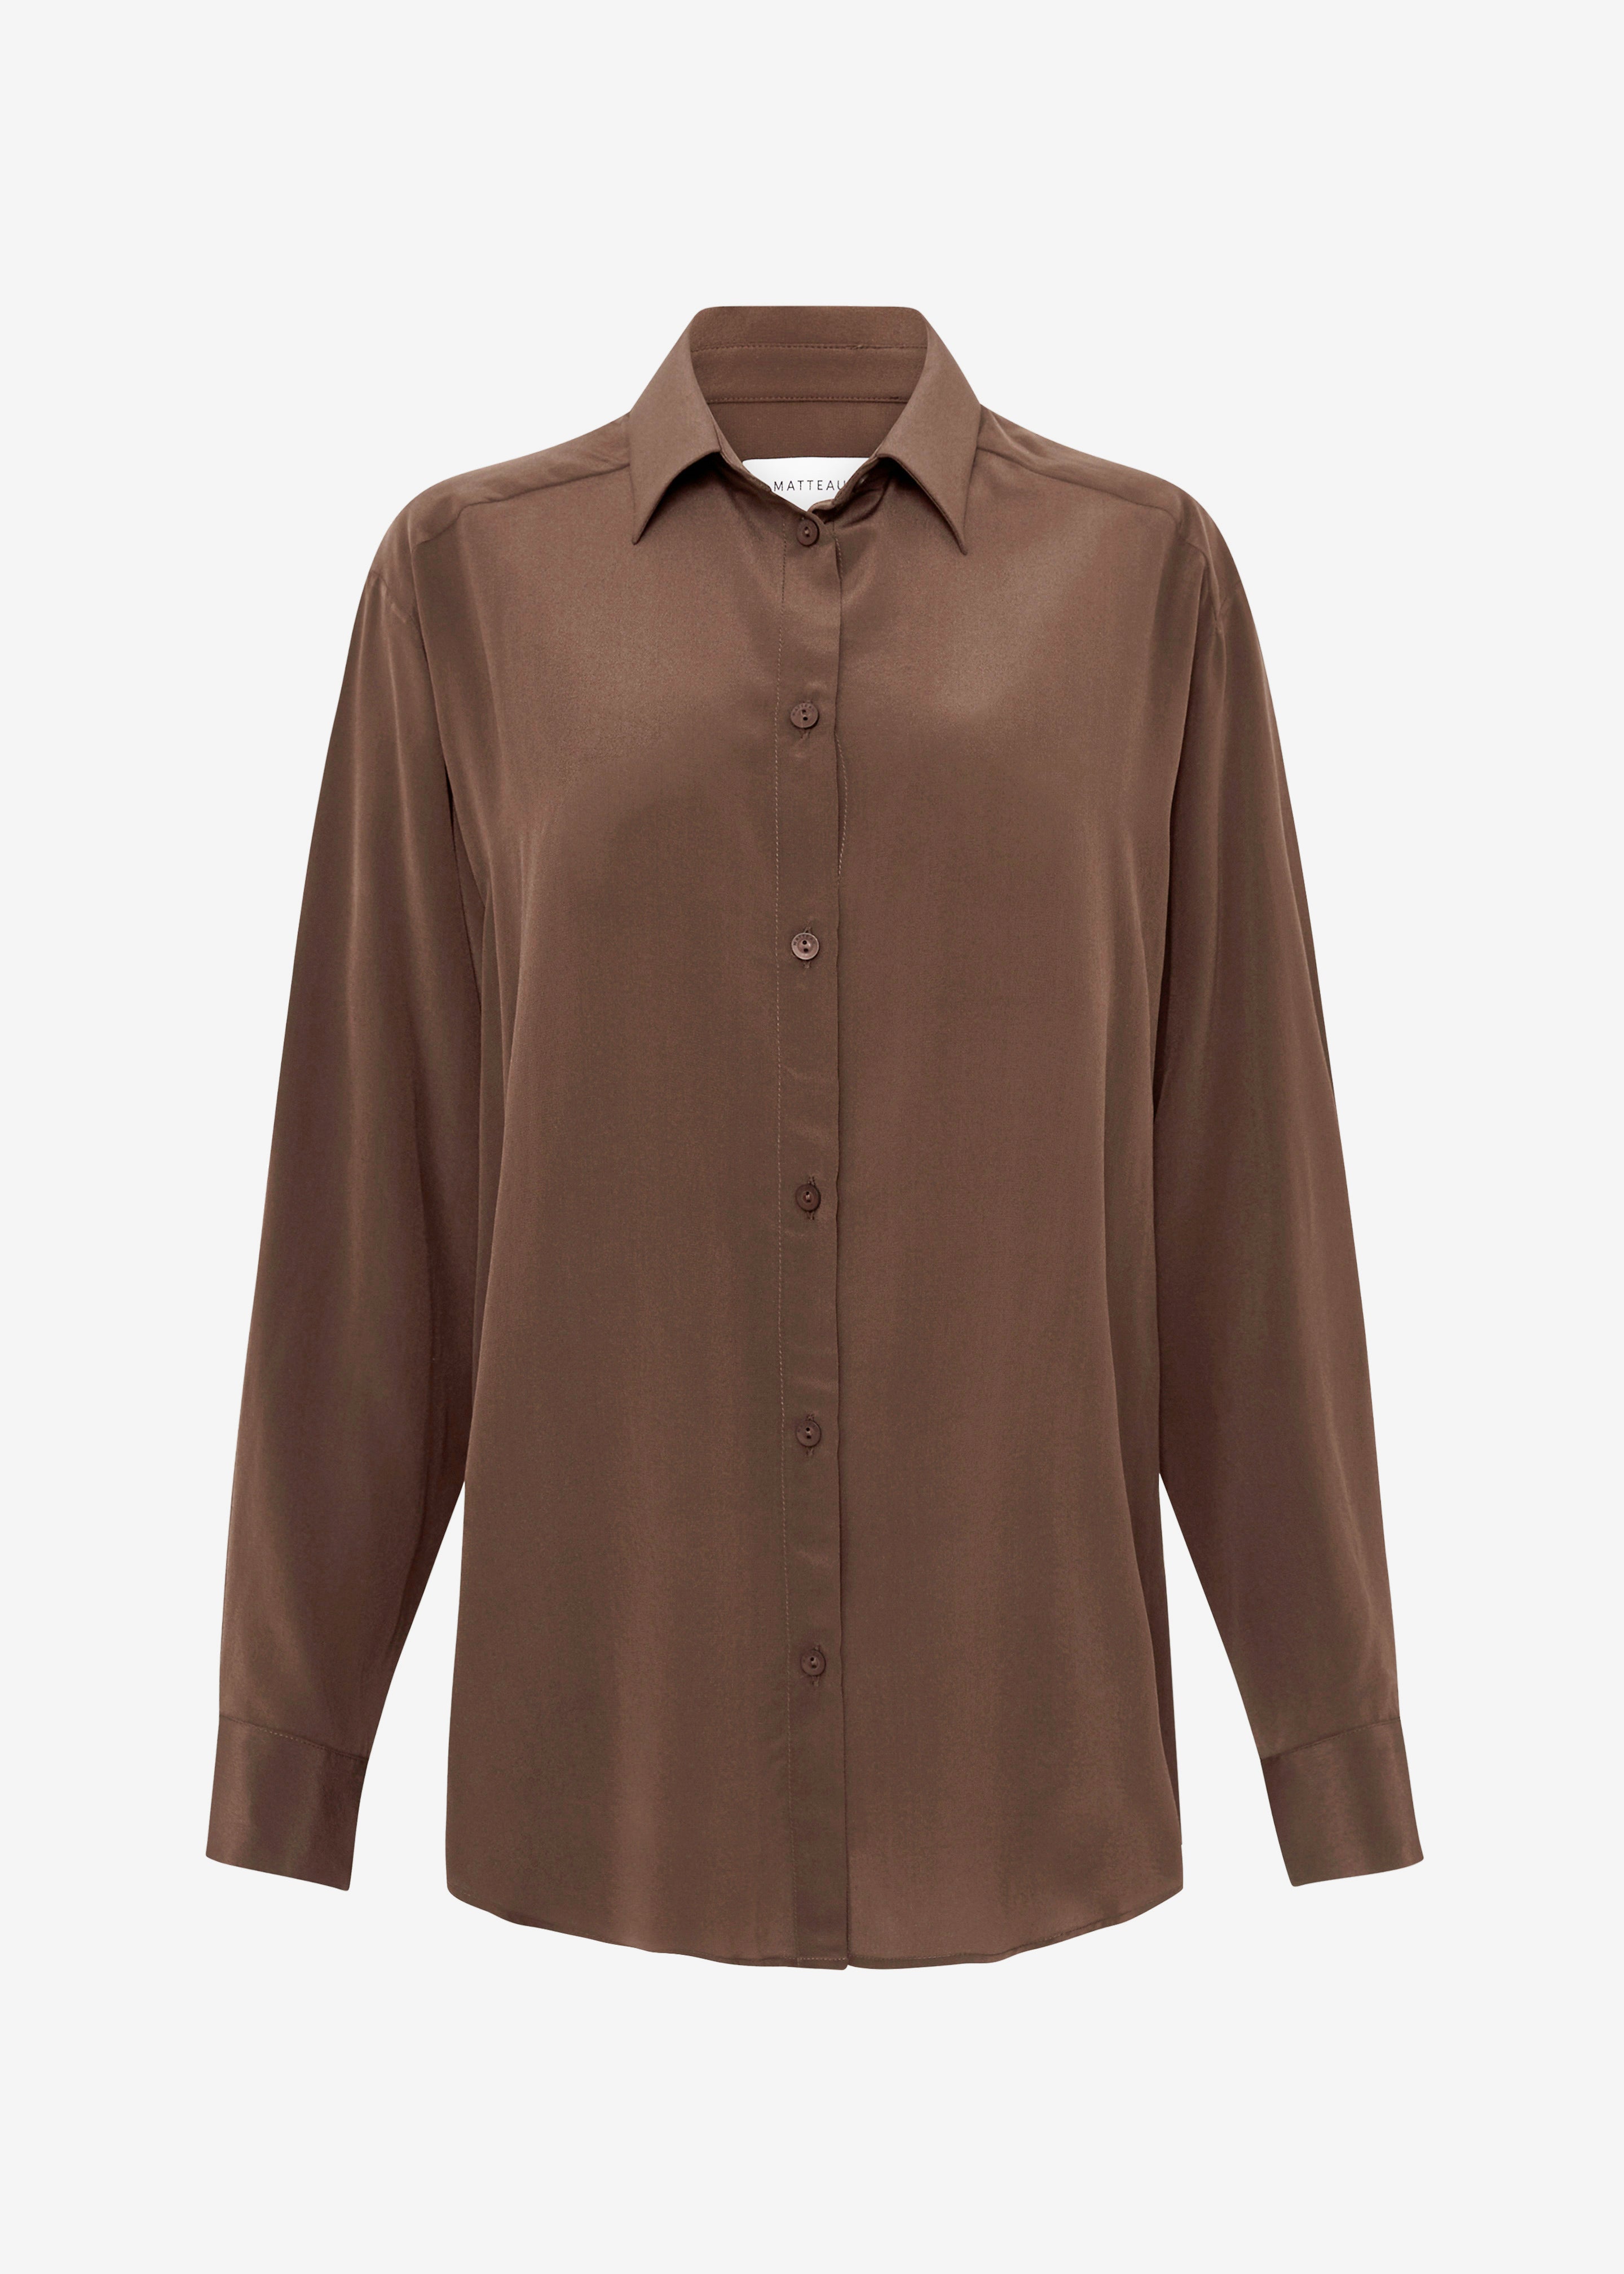 Matteau Long Sleeve Silk Shirt - Sable - 10